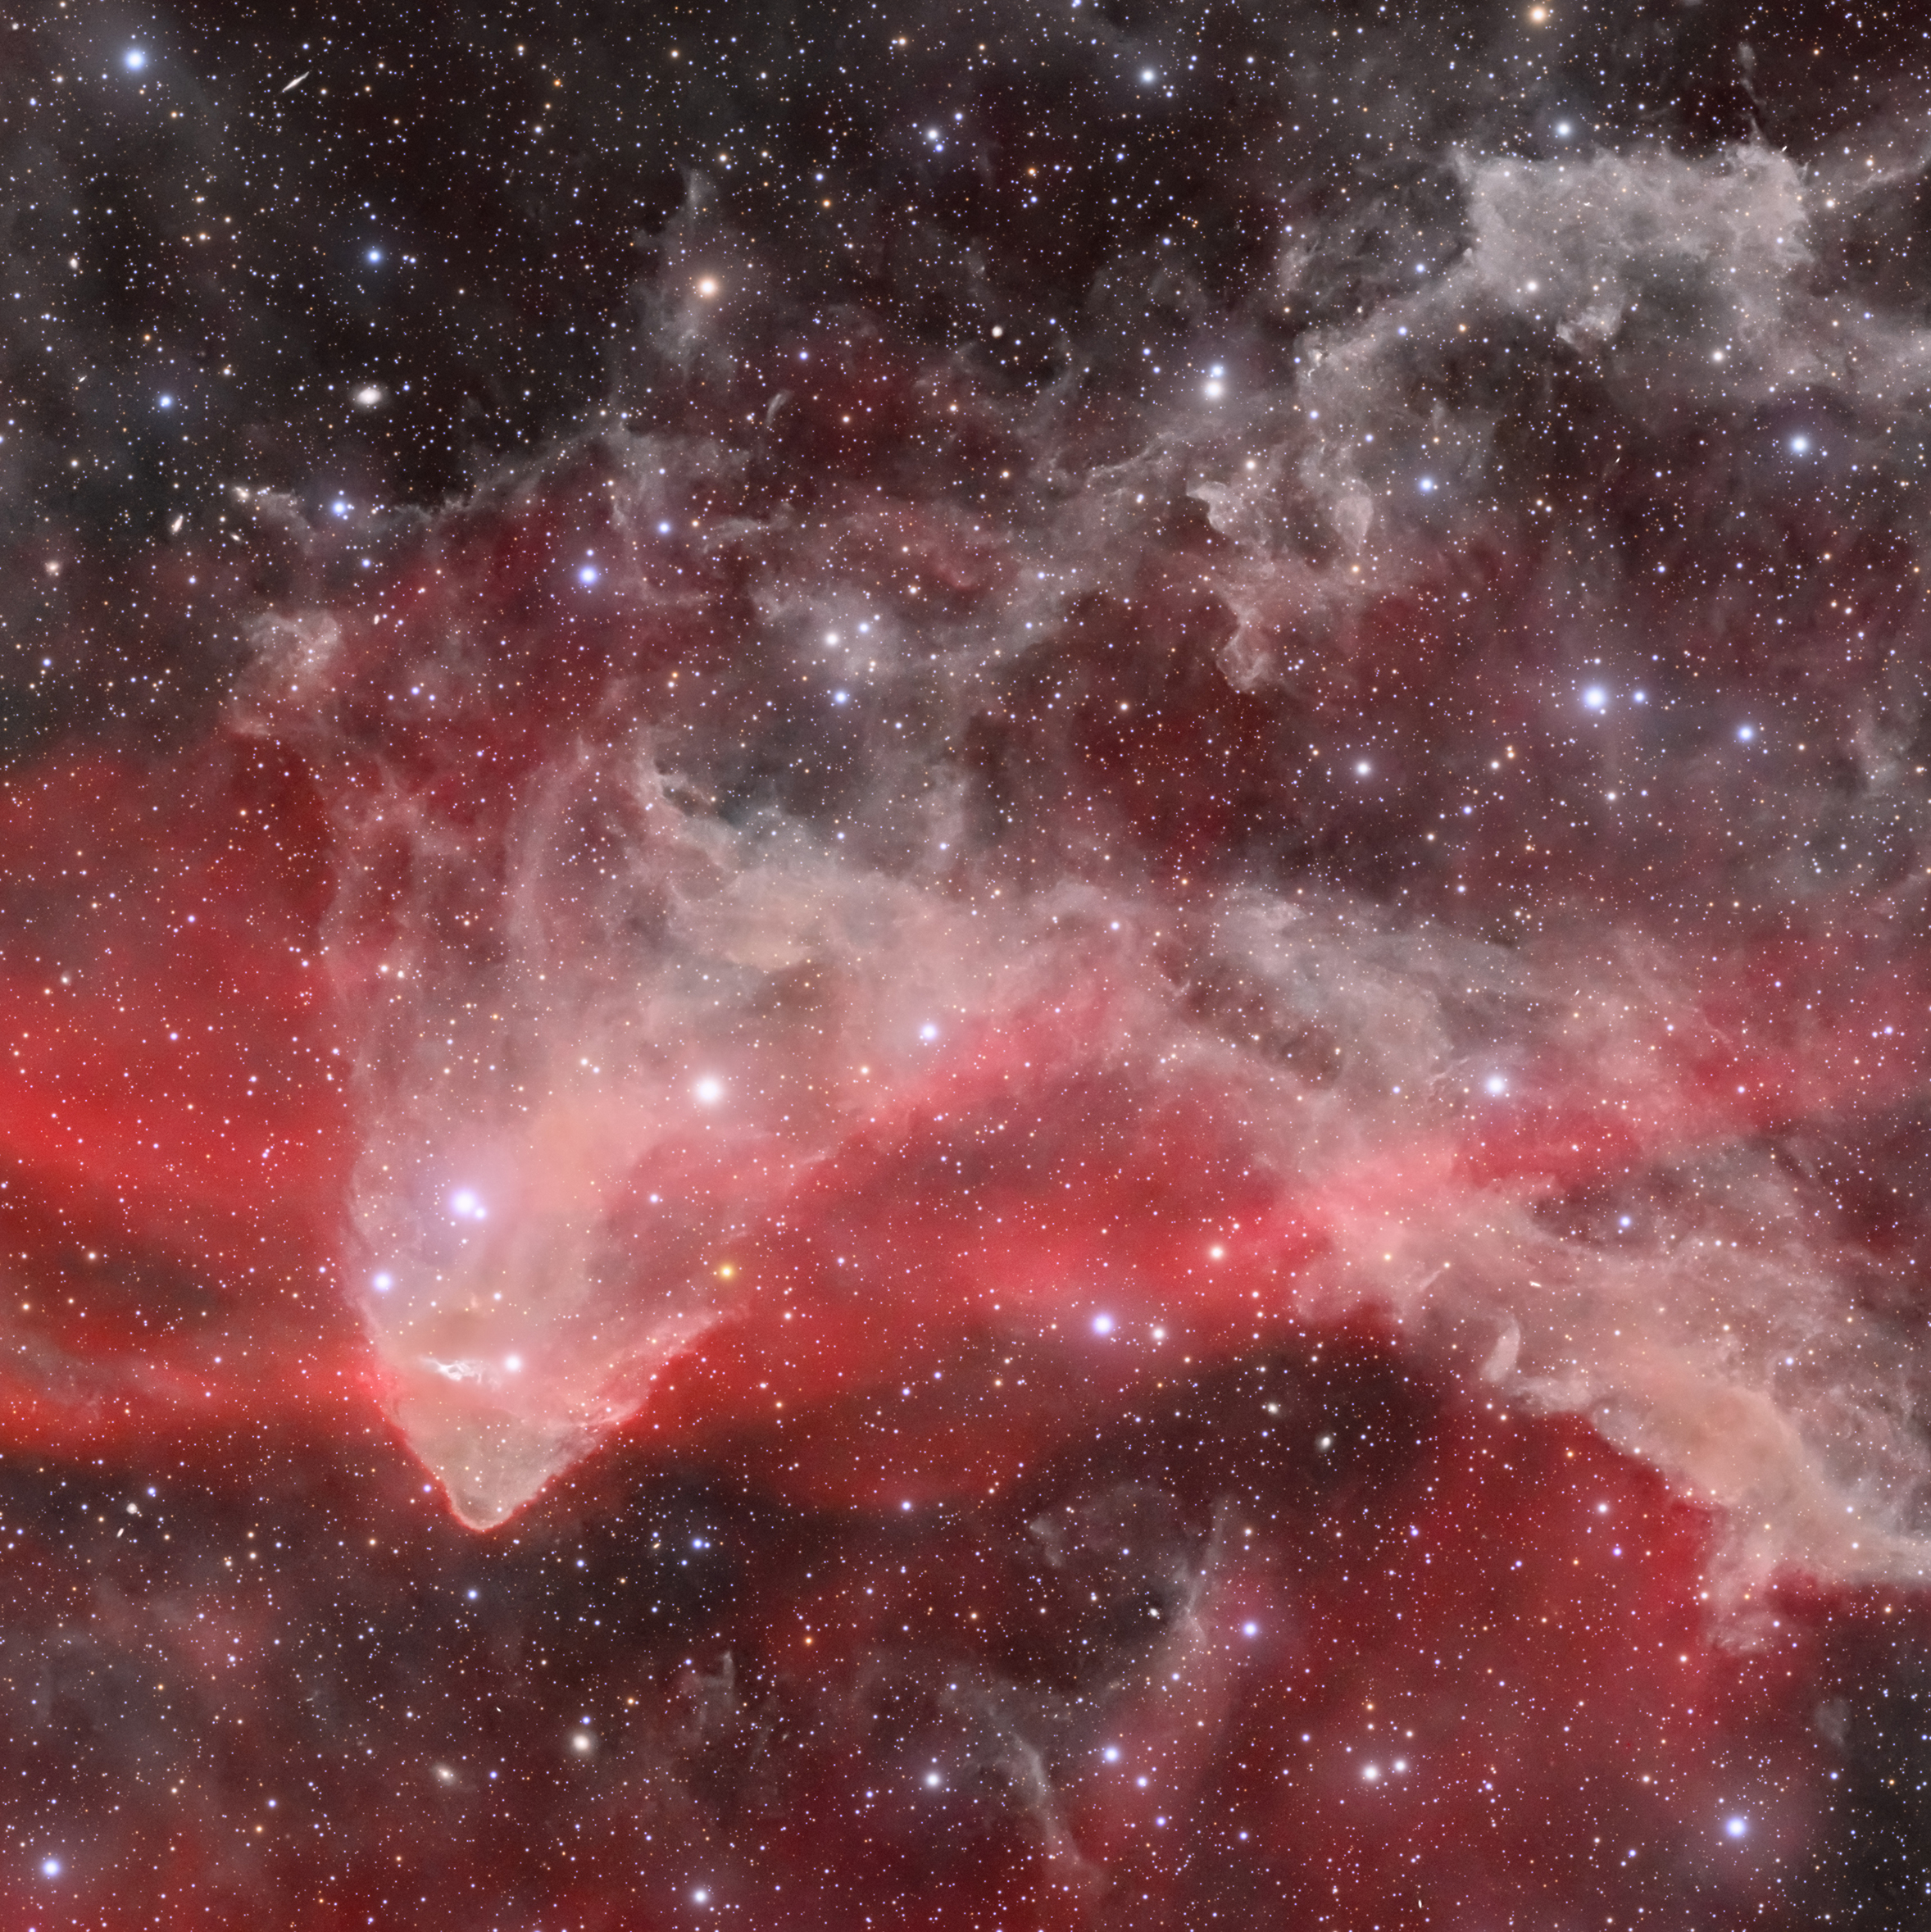 The Great Lacerta Nebula – Sh2 126